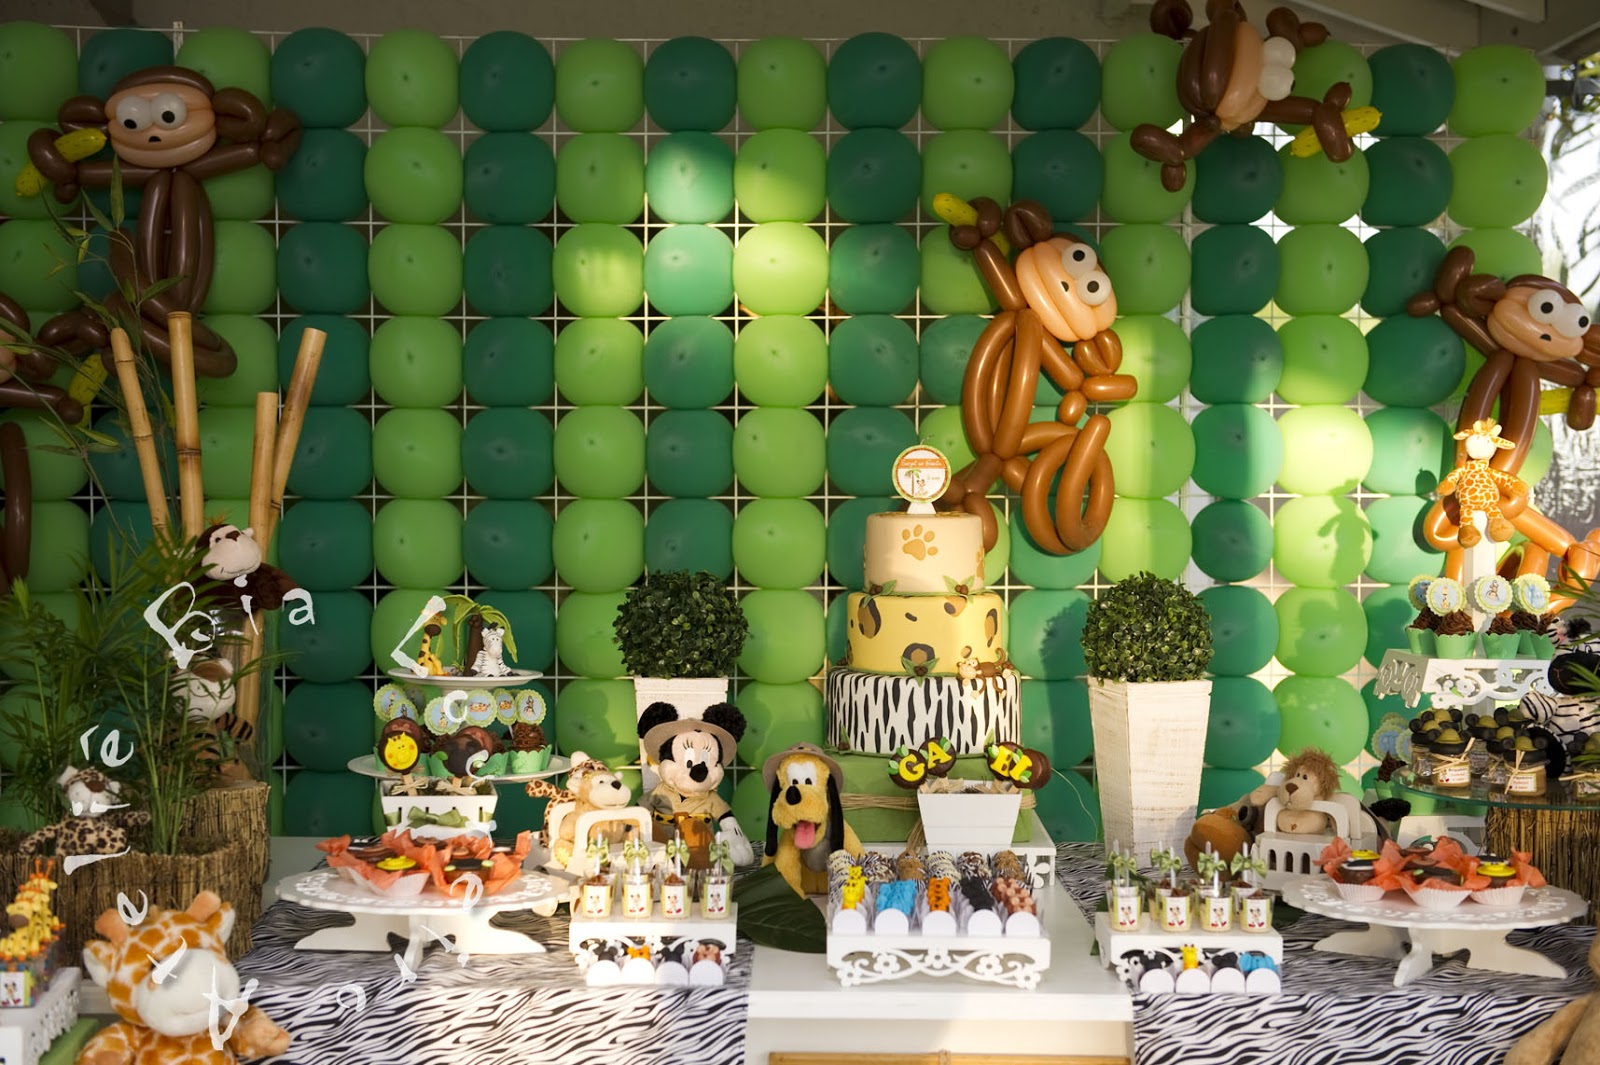 Festa Safari 60 inspirações de decoração infantil Dicas da Japa